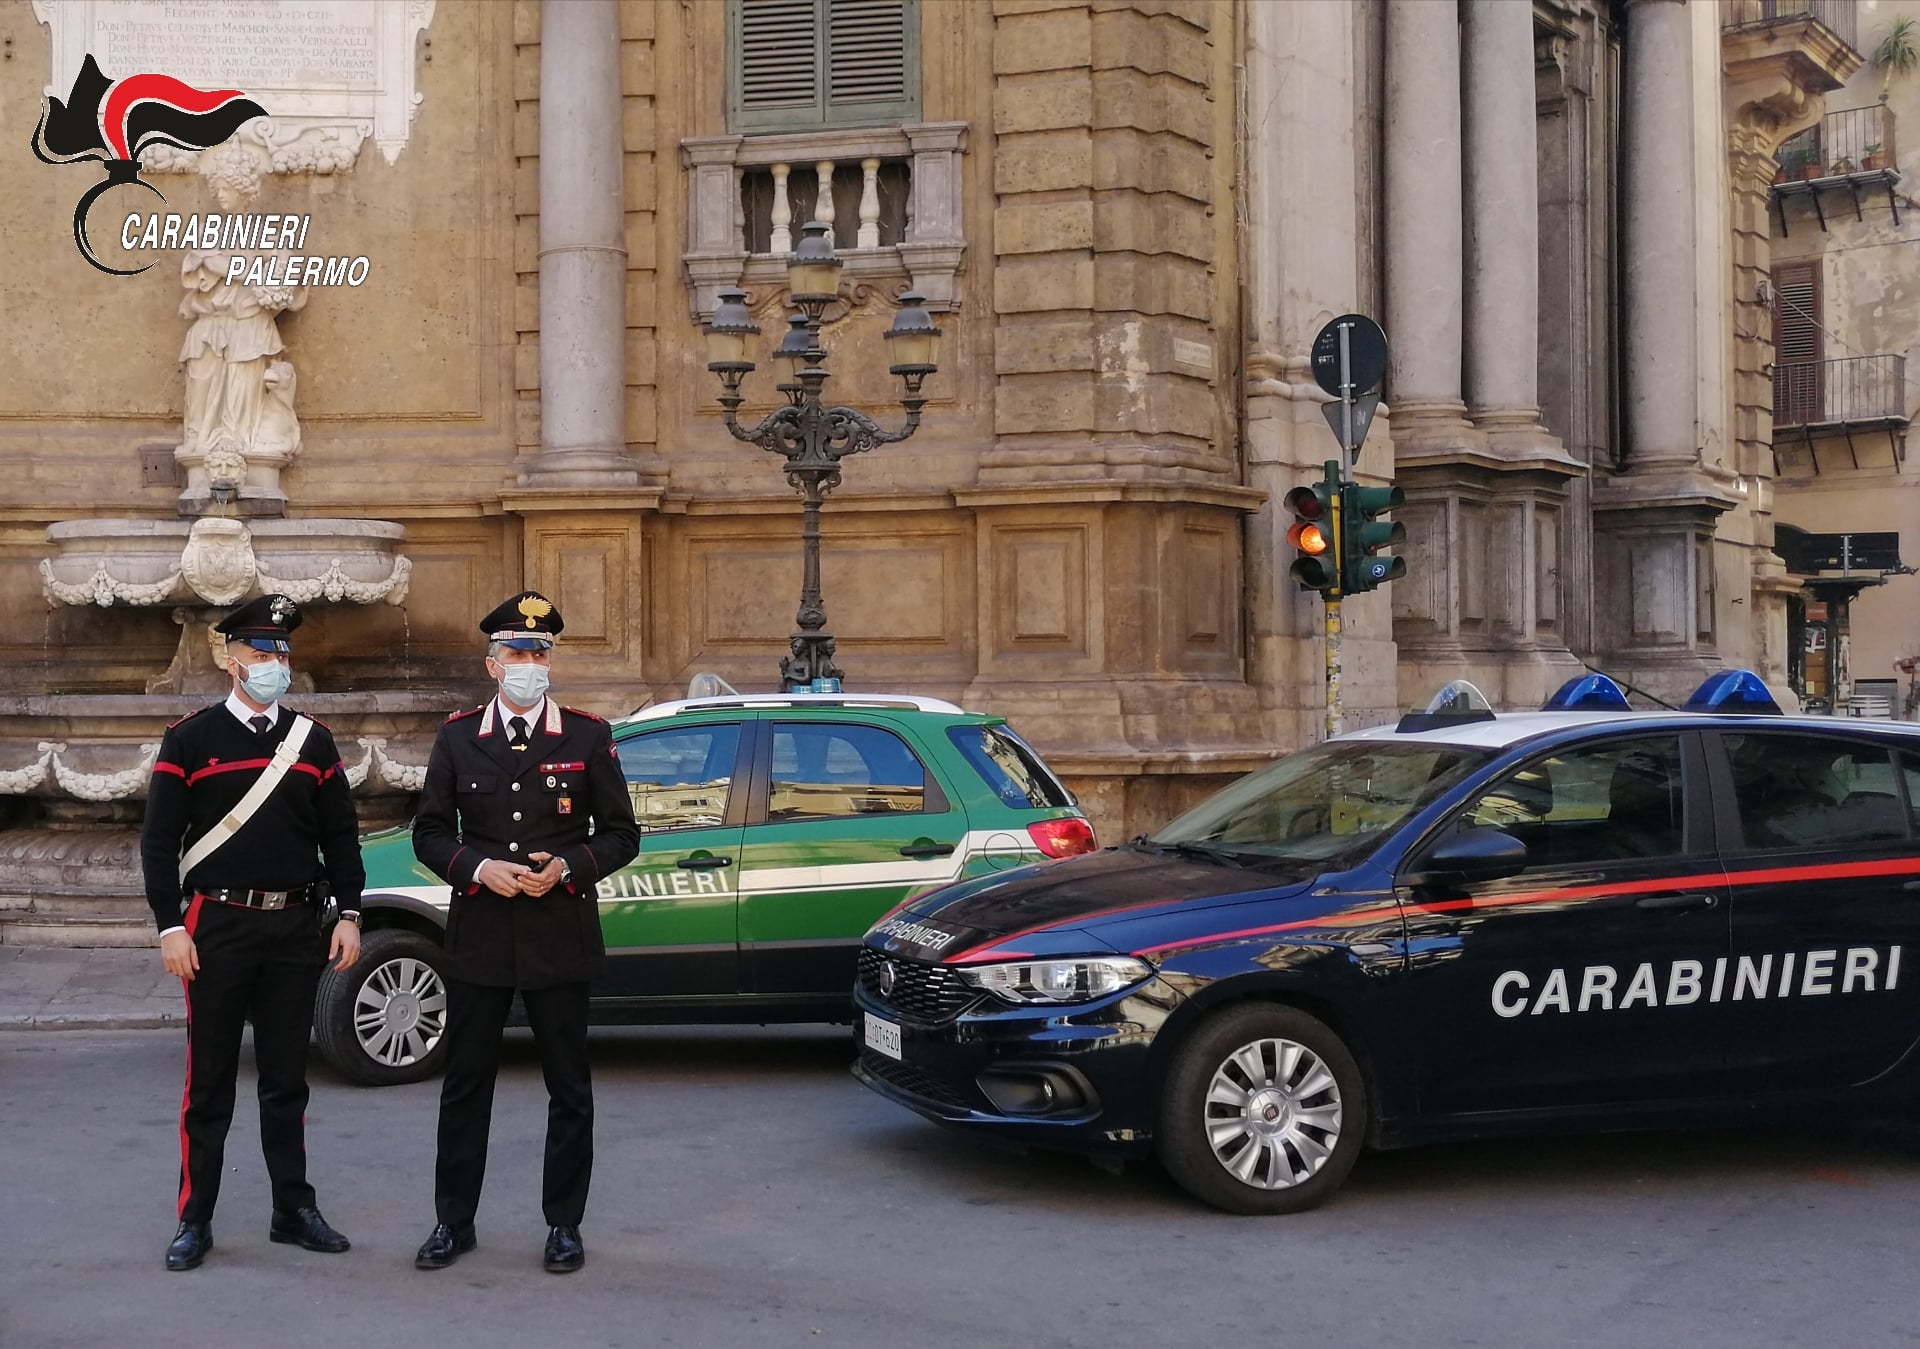 Trasporto e sversamento illegale di rifiuti, i carabinieri beccano i “furbetti”: identificati i responsabili